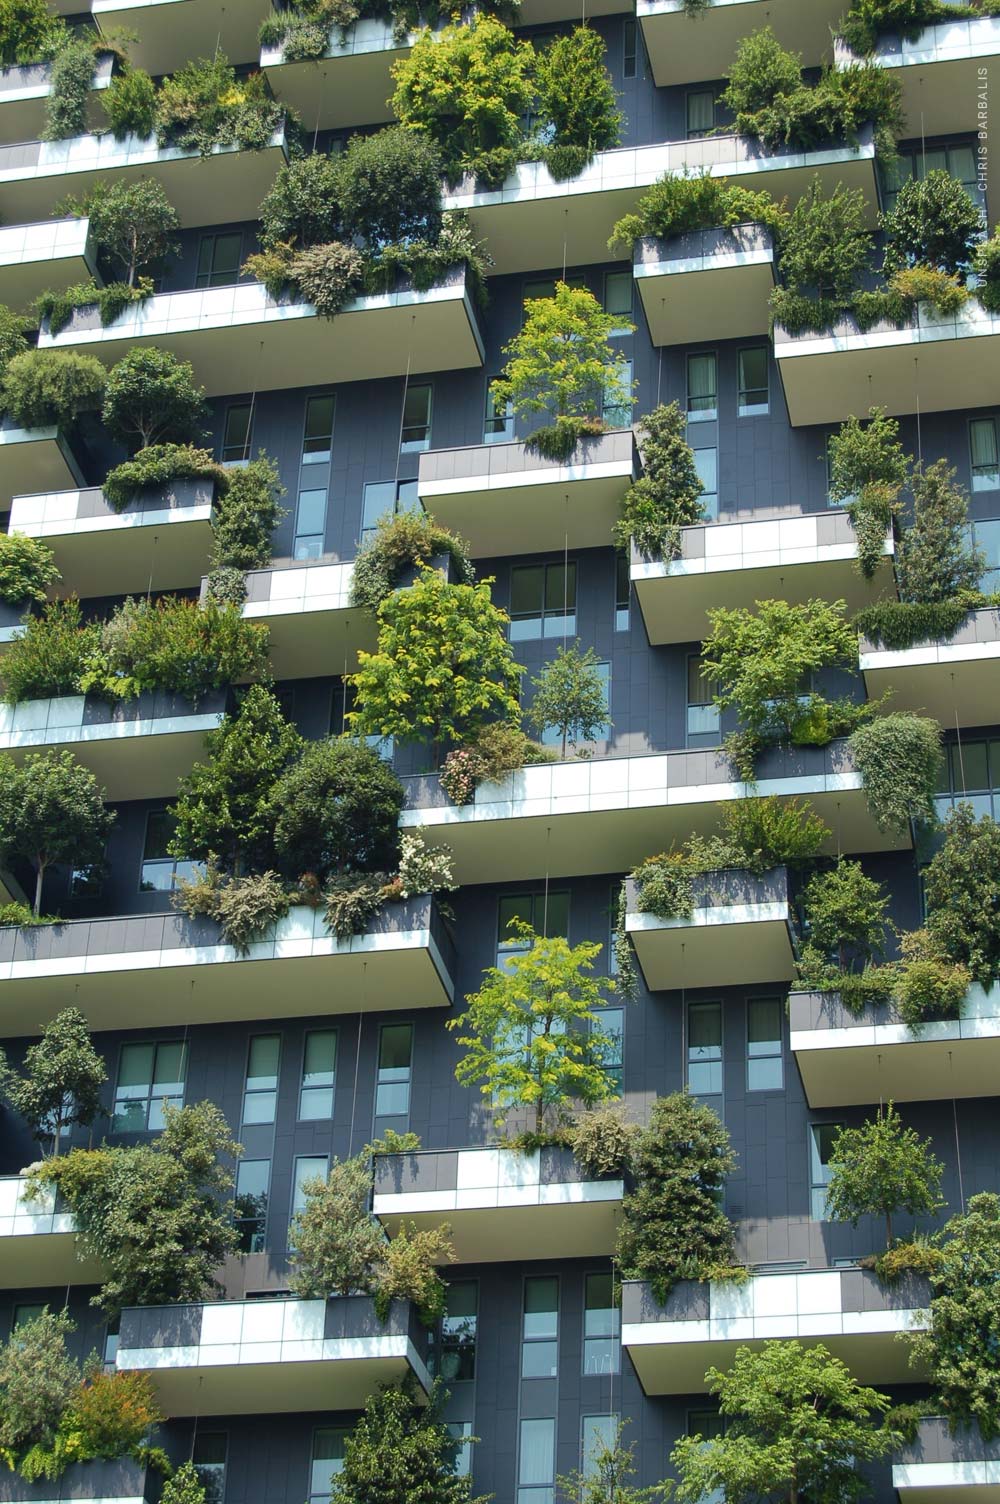 Berlin: Yeşil çatı yasası ve giderek pahalılaşan lüks konutlar - Immo News KW20